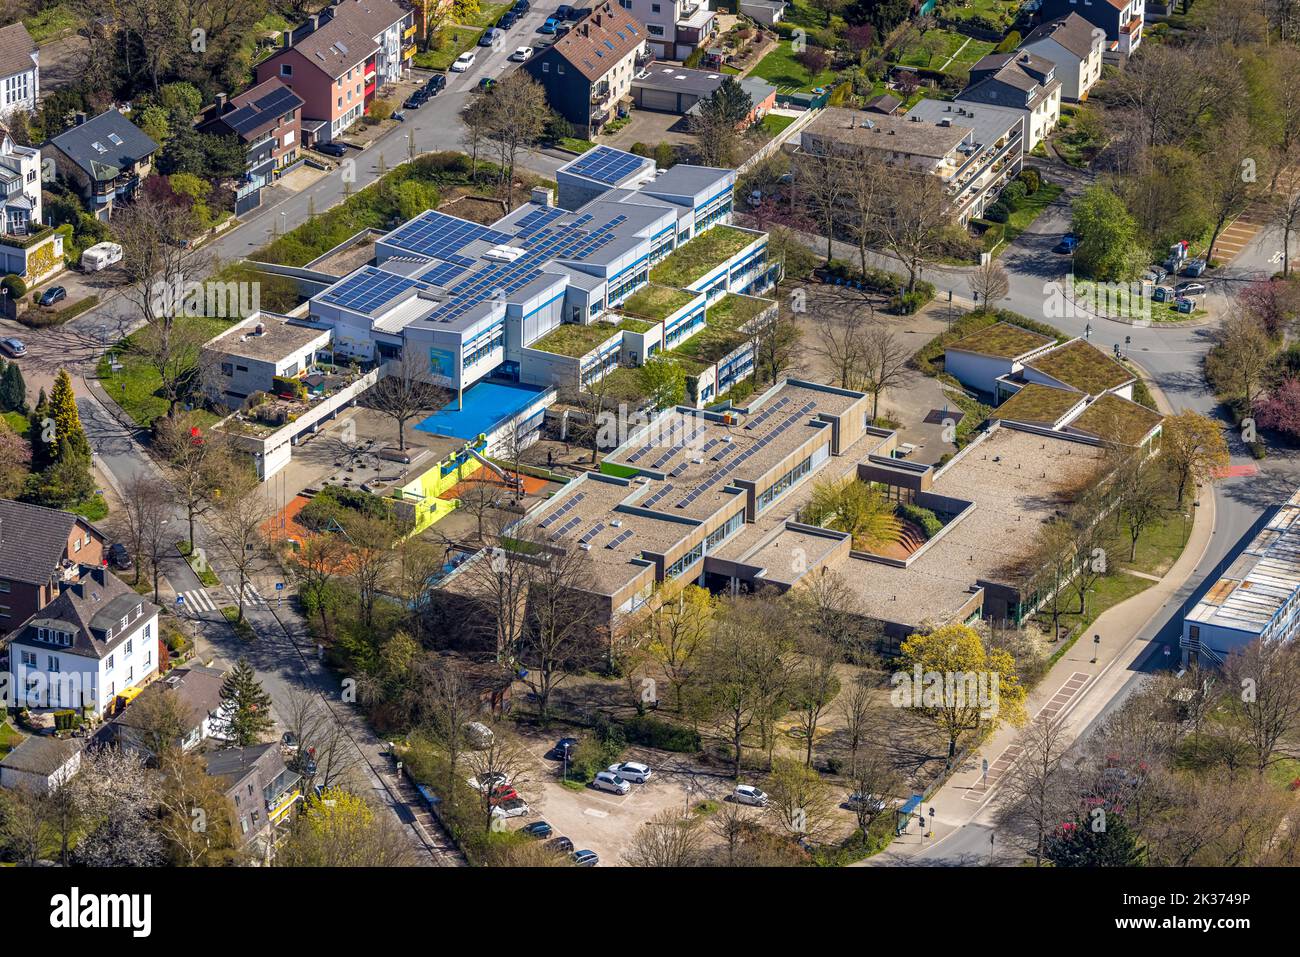 Vue aérienne, Realschule am Bleichstein et Werner Richard School avec toit solaire, Herdecke, région de la Ruhr, Rhénanie-du-Nord-Westphalie, Allemagne, Éducation, Edu Banque D'Images